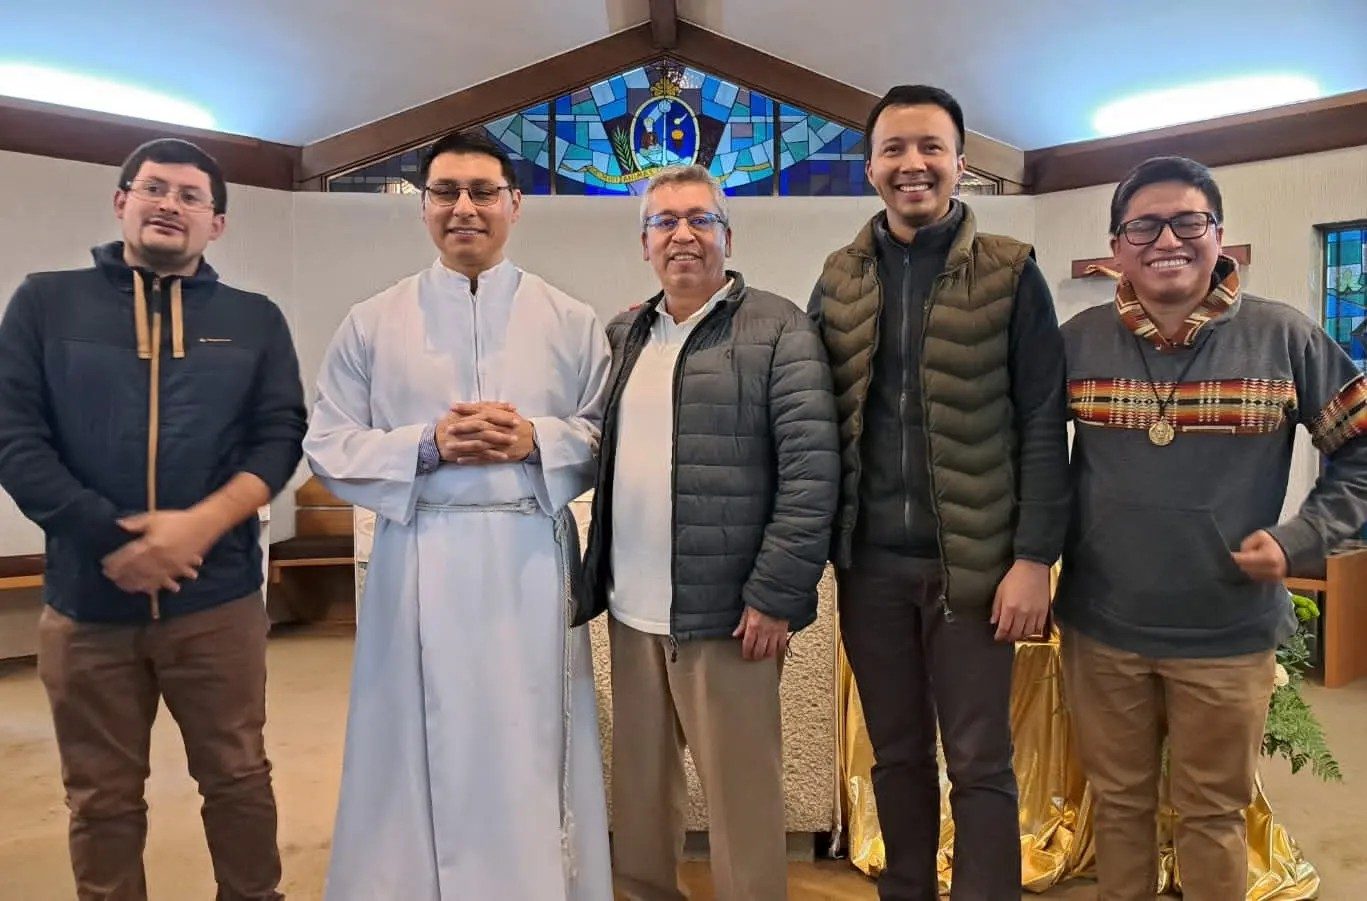 Ecuador | Cristian Chávez, continúa en su camino al sacerdocio